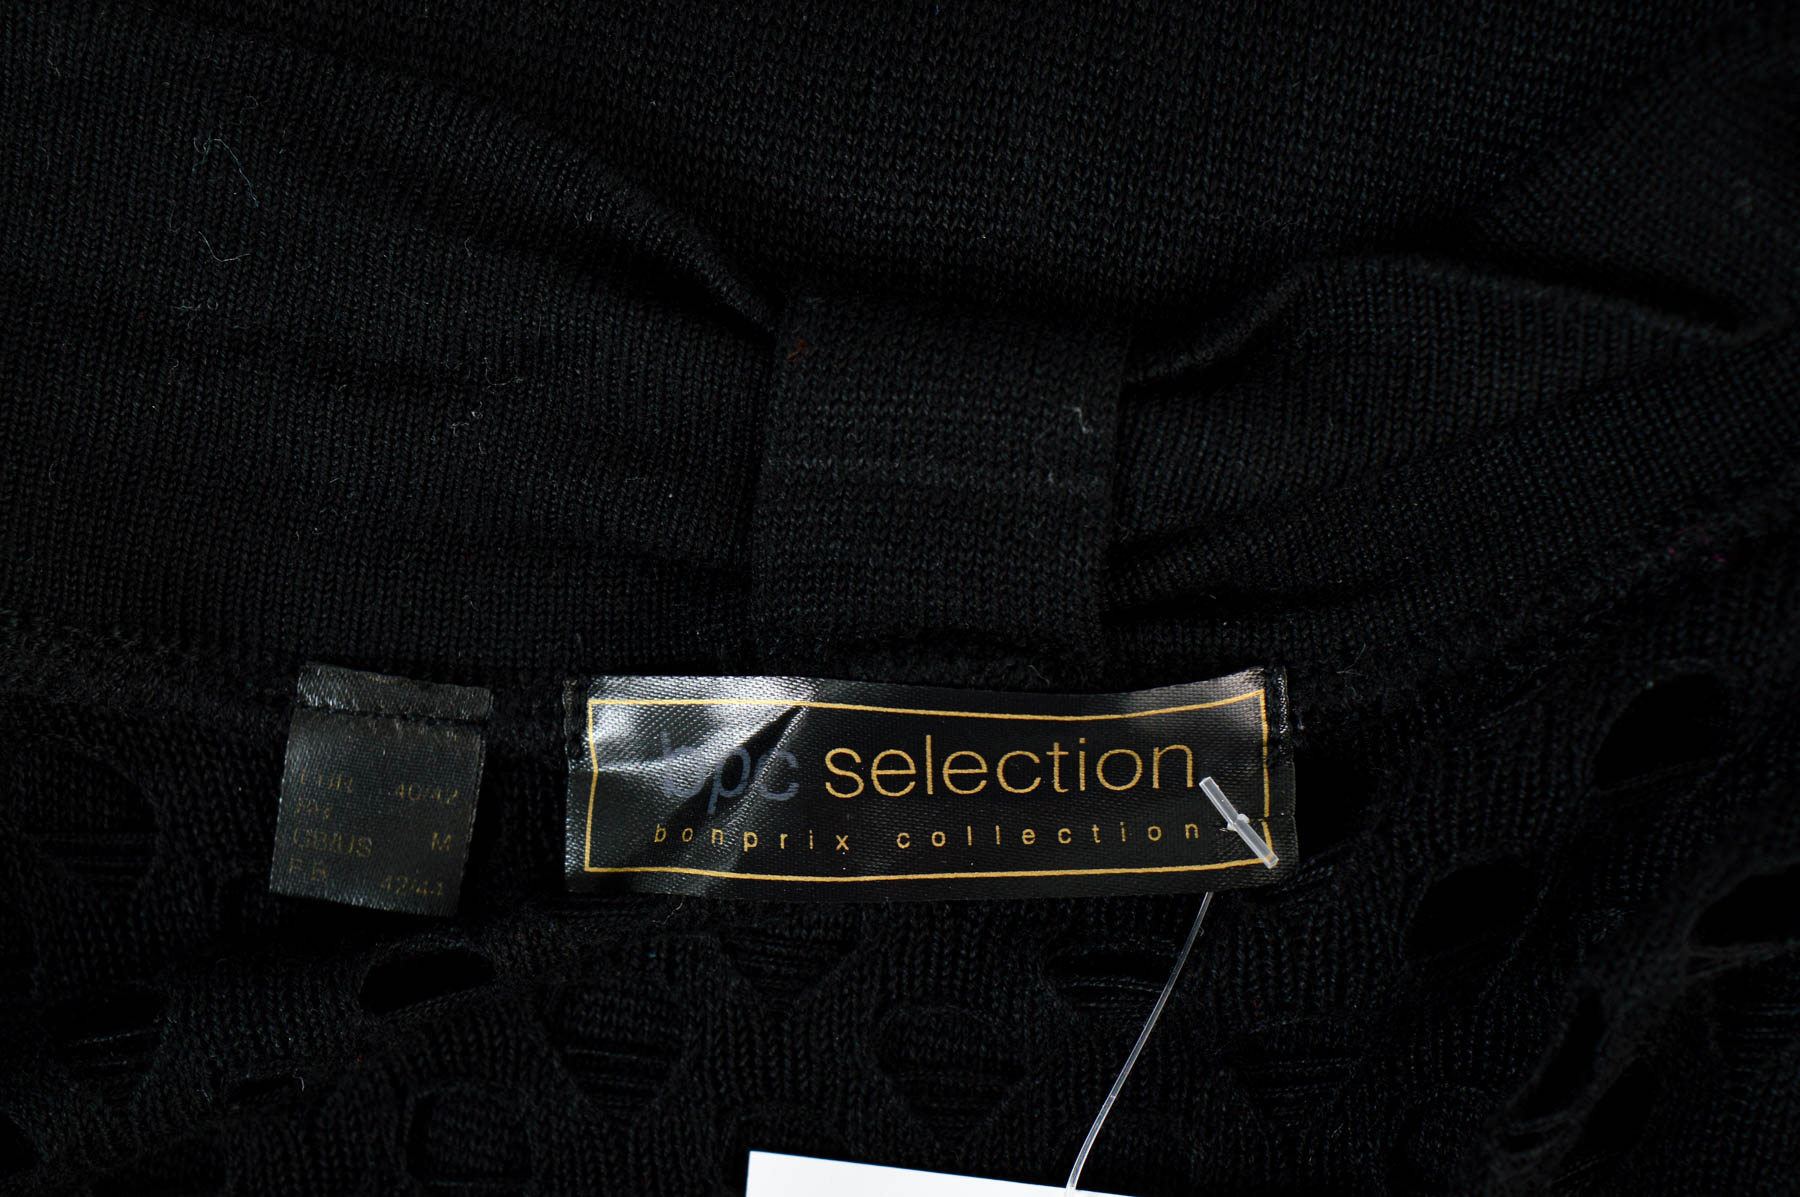 Cardigan / Jachetă de damă - Bpc selection bonprix collection - 2